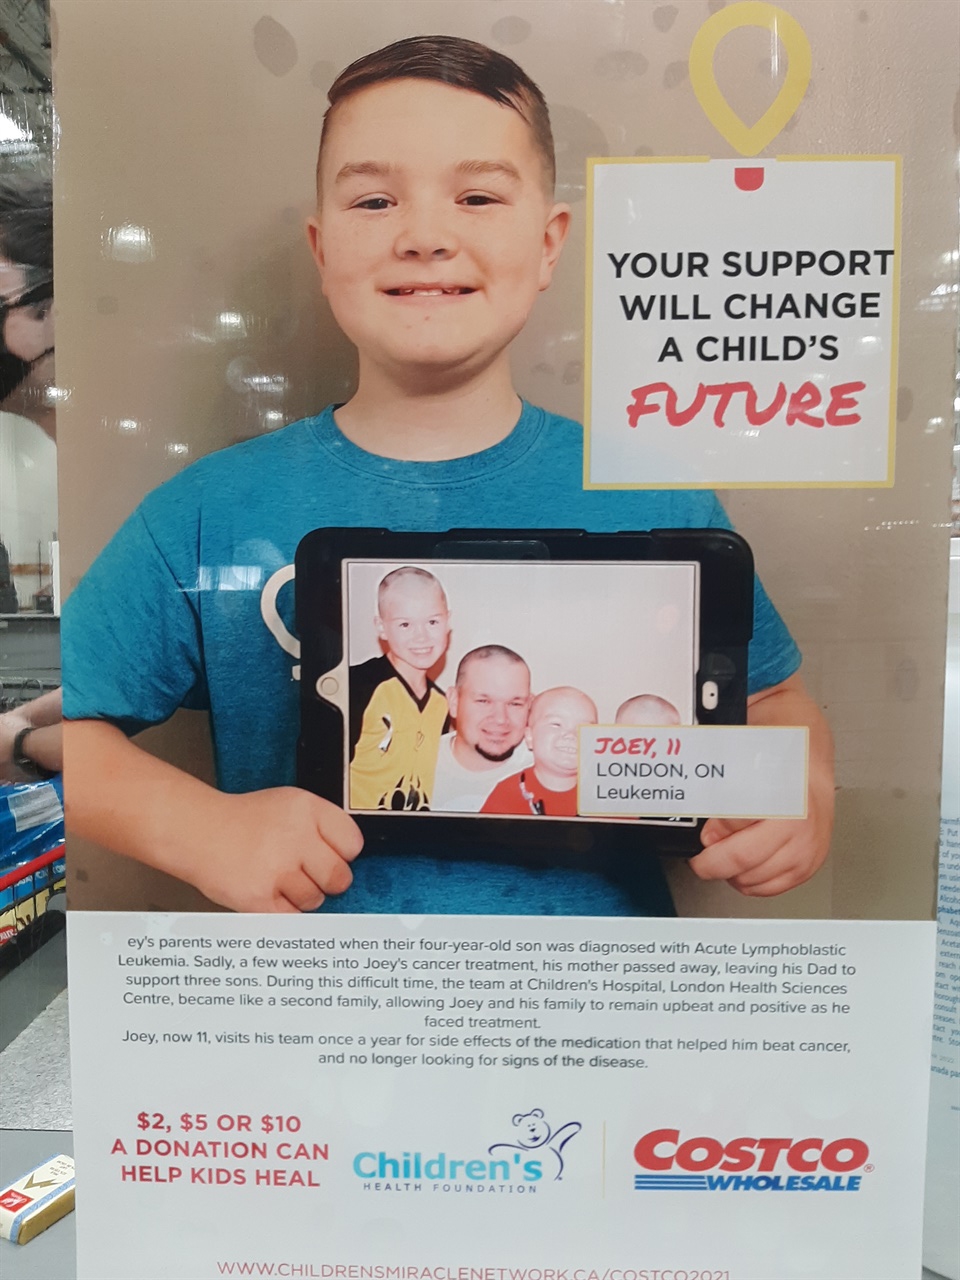 코스트코 계산대 앞에 붙여 놓은 포스터. 계산 시, 아픈 어린이들의 치료를 돕기 위한 기부를 독려하고 있다.